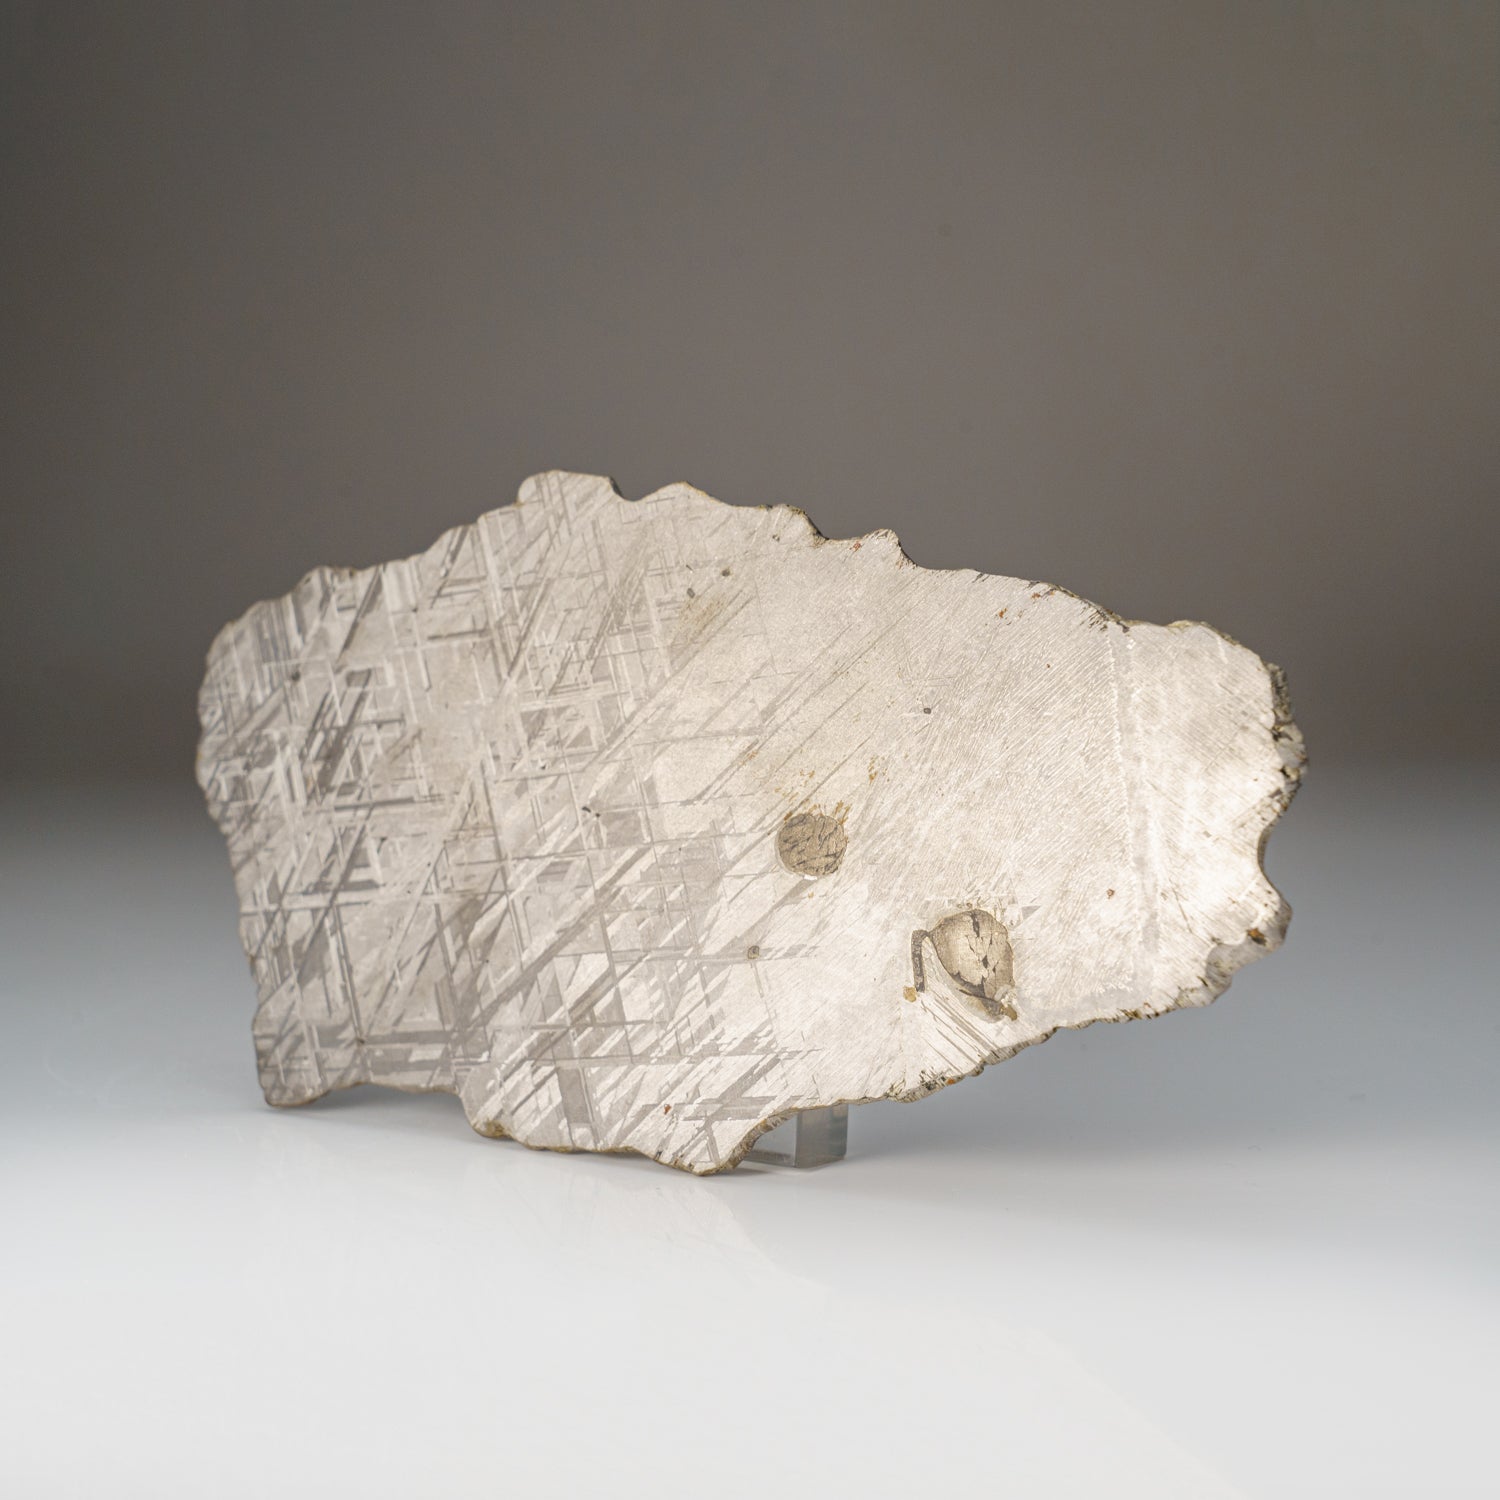 Genuine Muonionalusta Meteorite Slice (329 grams)